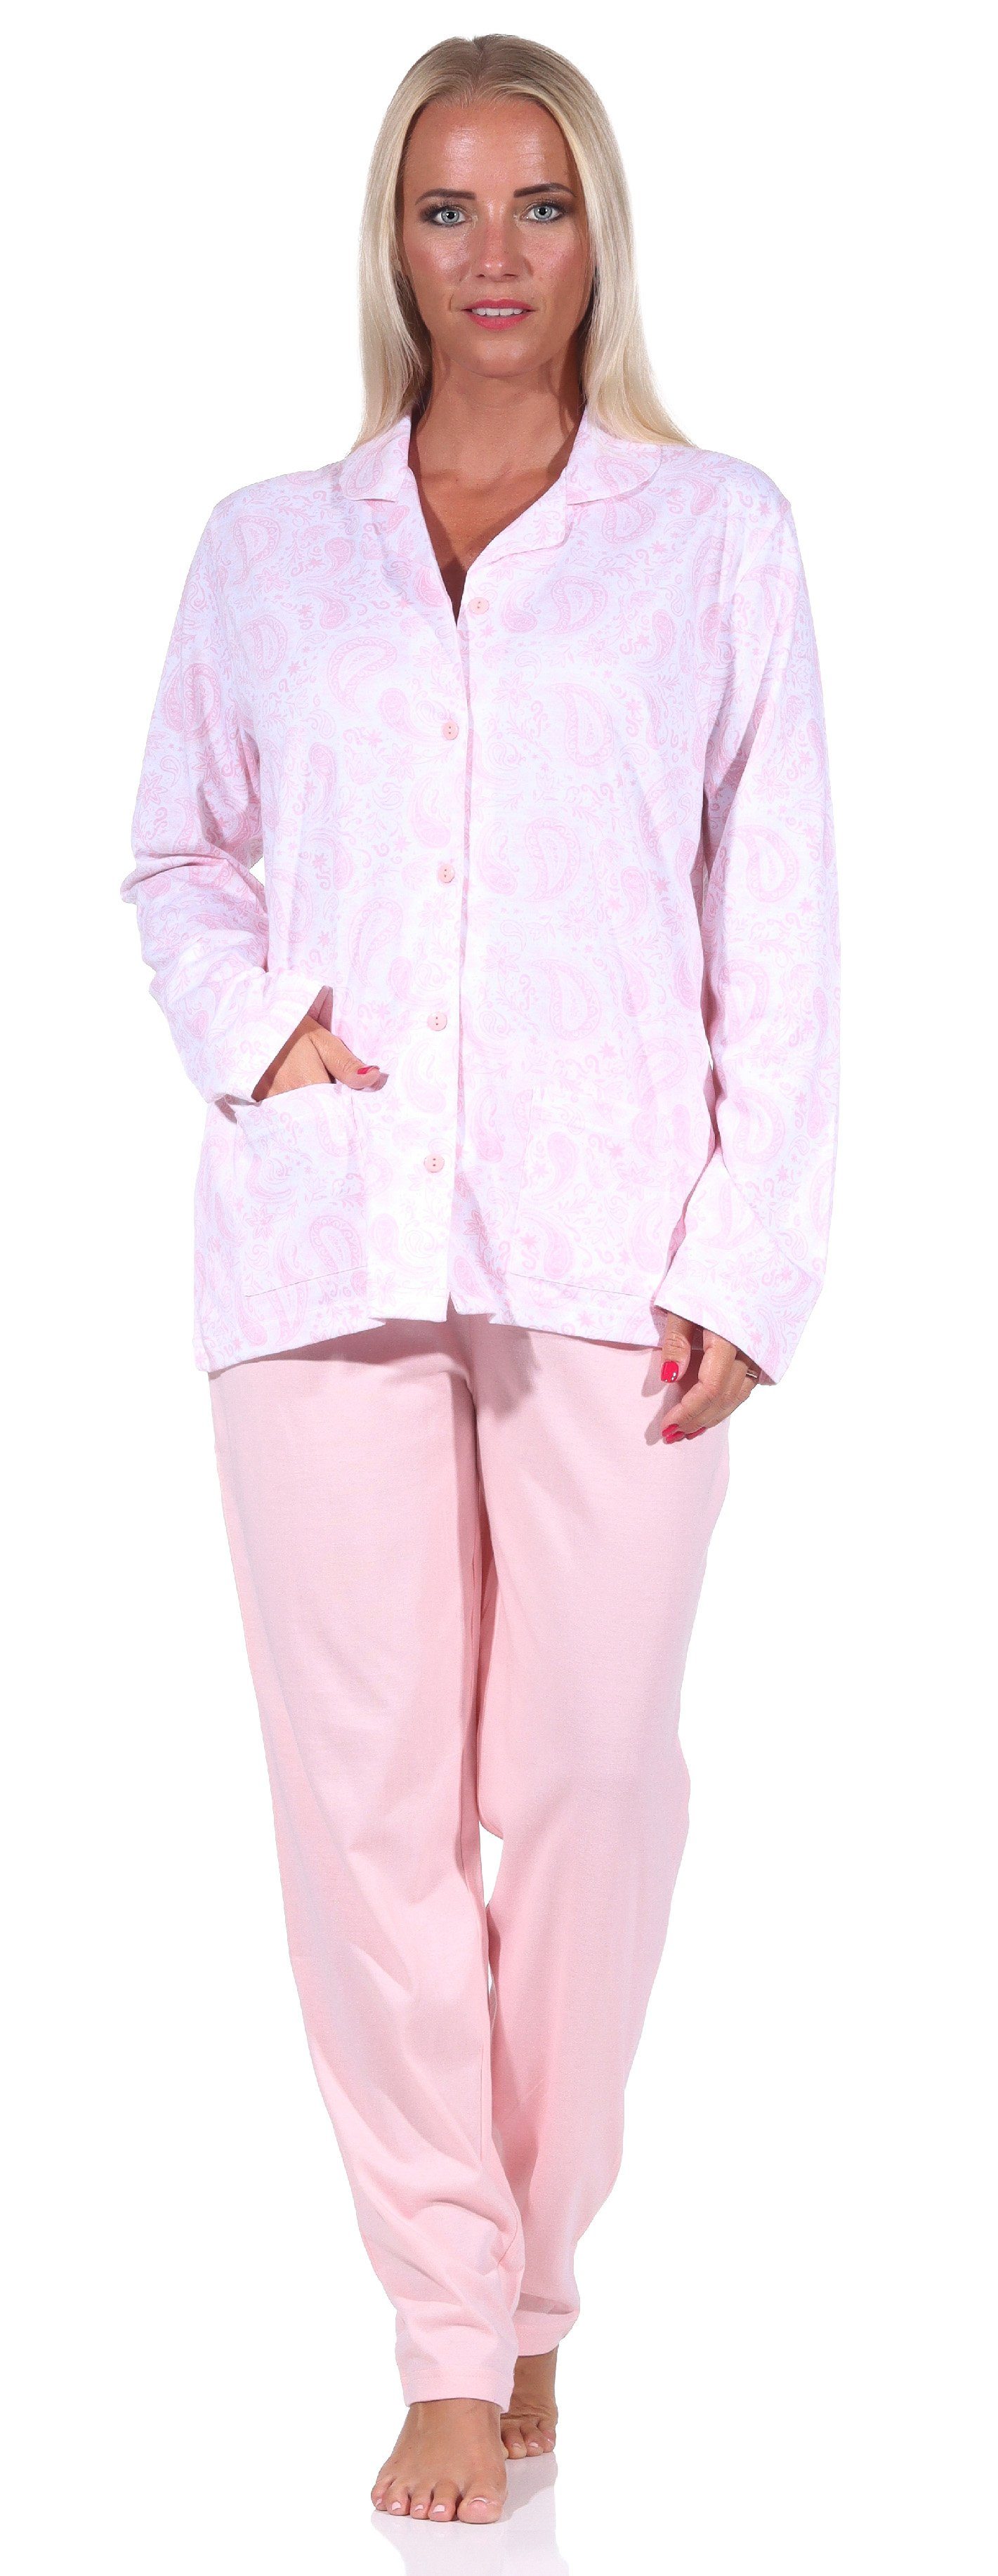 Qualität zum Single langarm Jersey durchknöpfen Pyjama rosa Pyjama Damen in Normann